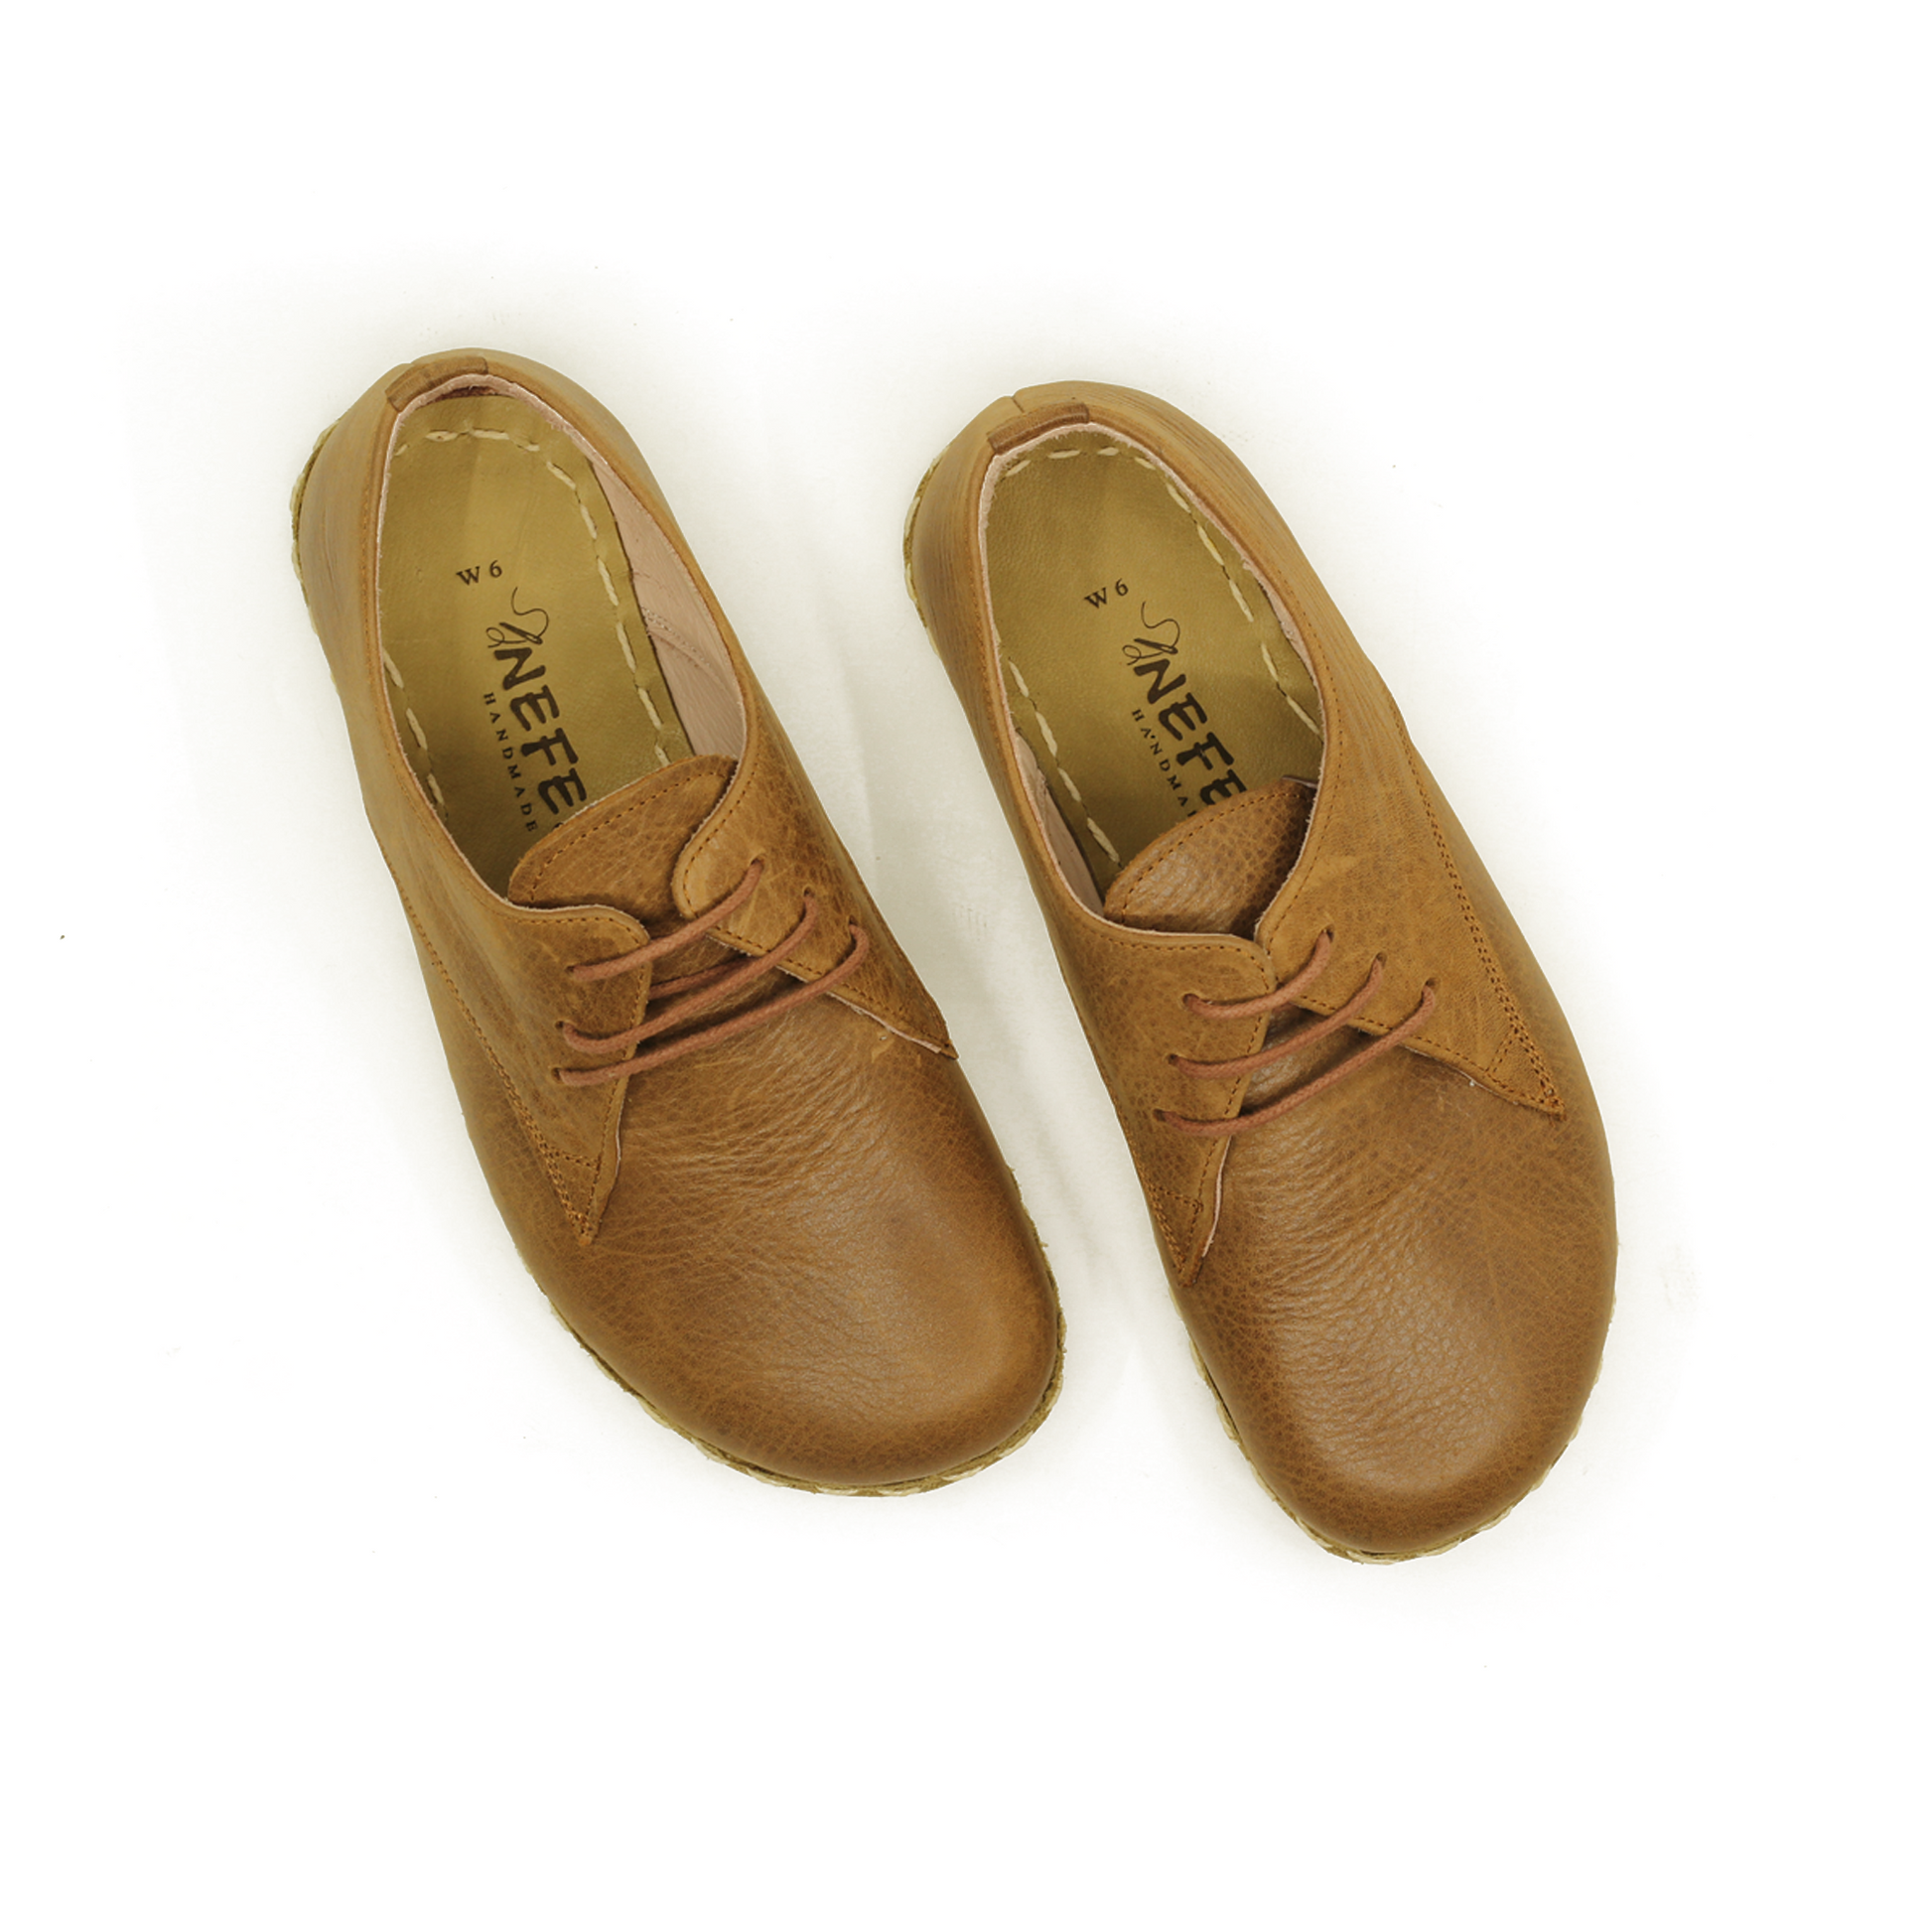 Handmade Zero Drop Barefoot Shoes For Women Matte Brown-Women Barefoot Shoes Laced-nefesshoes-3-Nefes Shoes